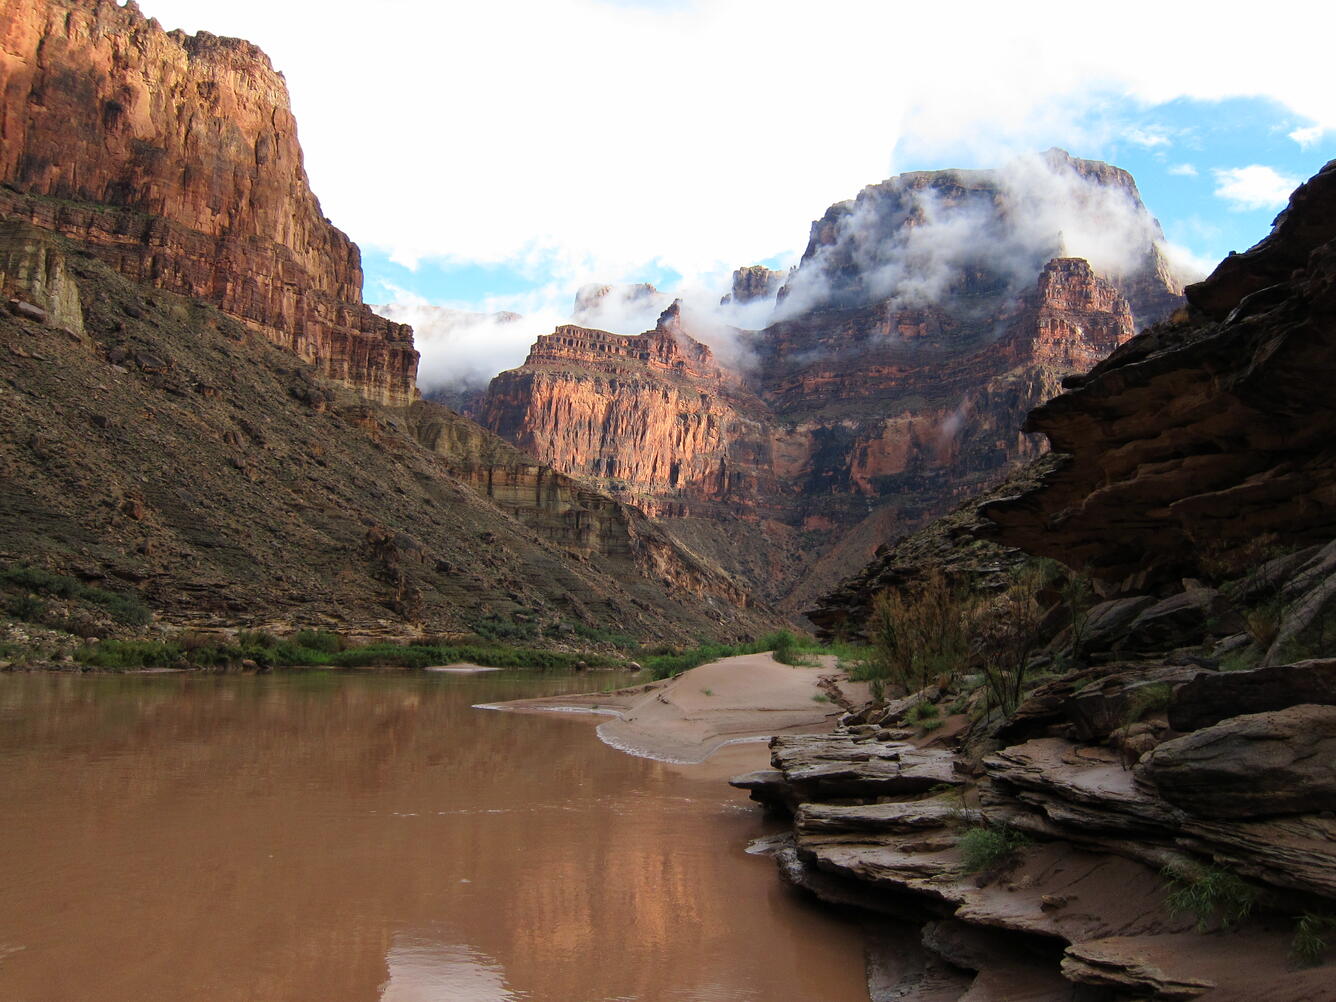 The Colorado River flowing through the Grand Canyon, AZ in 2013